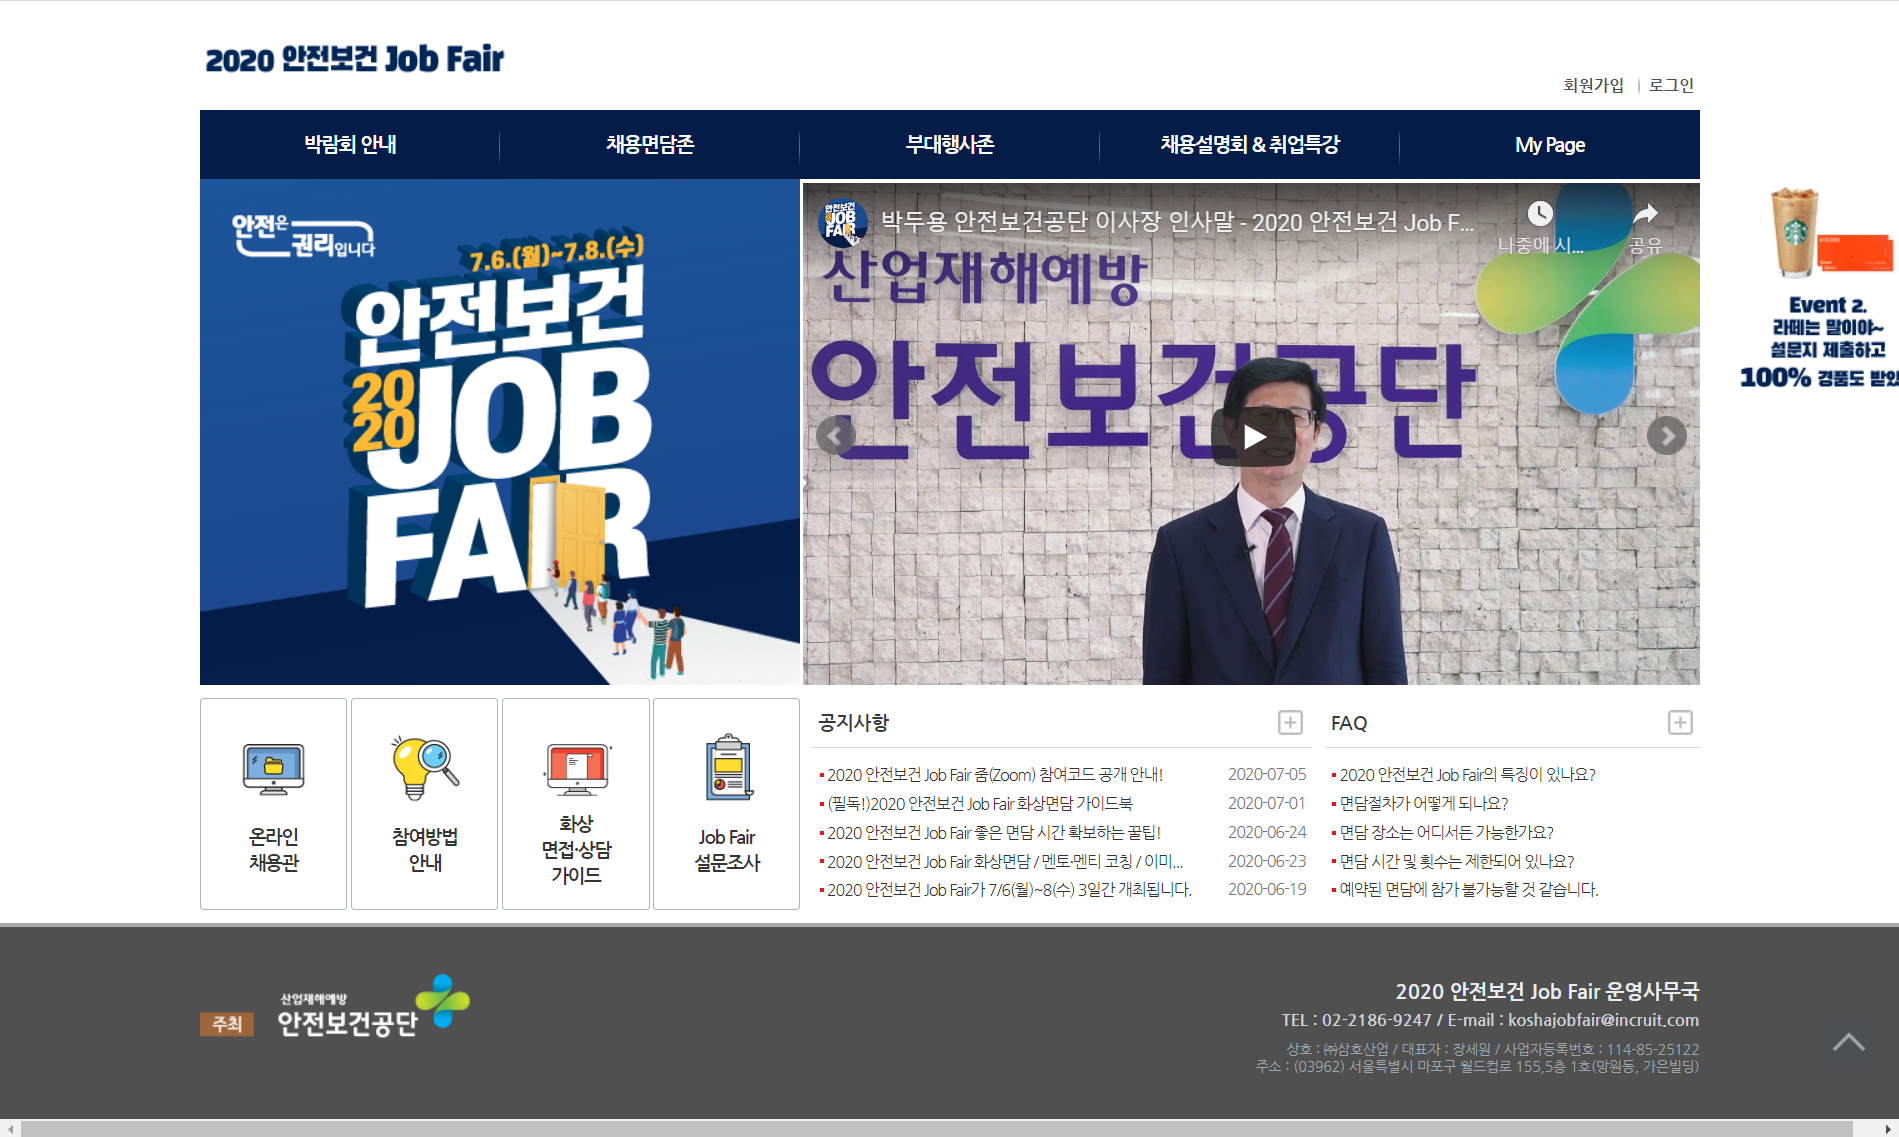 2020 안전보건 Job Fair(1)